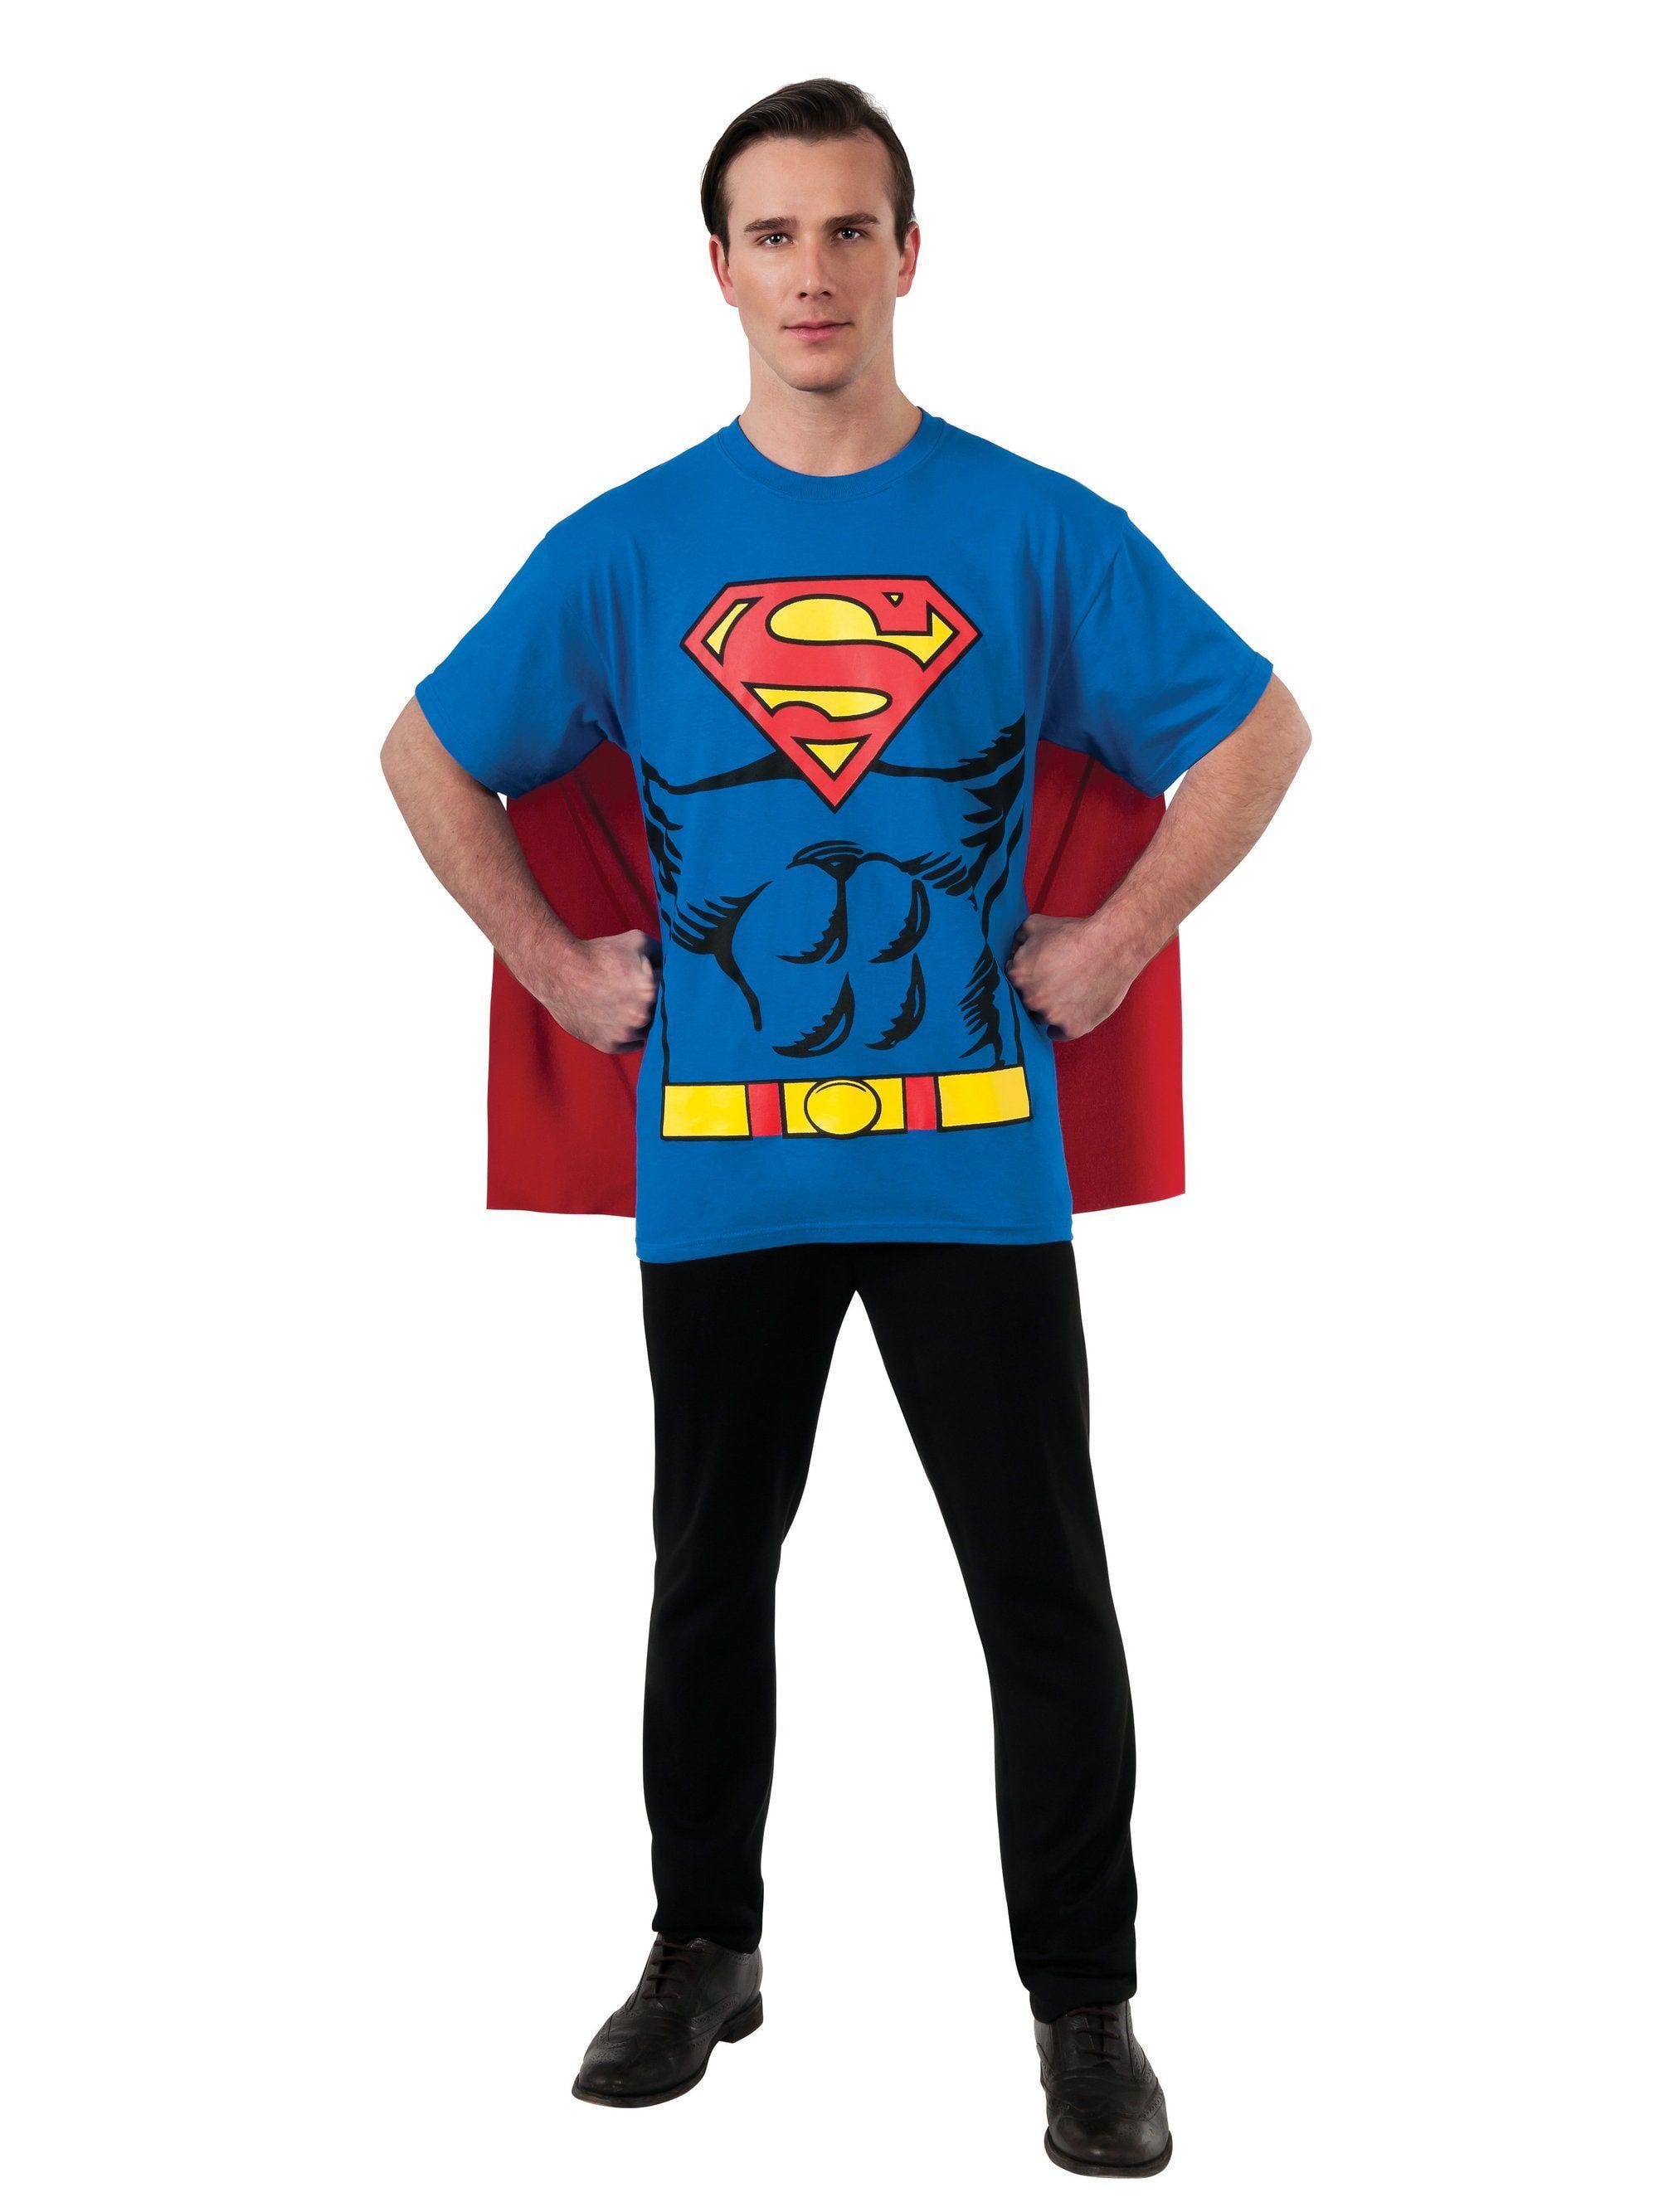 Halloween Superman Logo - Superman T-Shirt Costume Kit for Men - Mens Costumes for 2018 ...